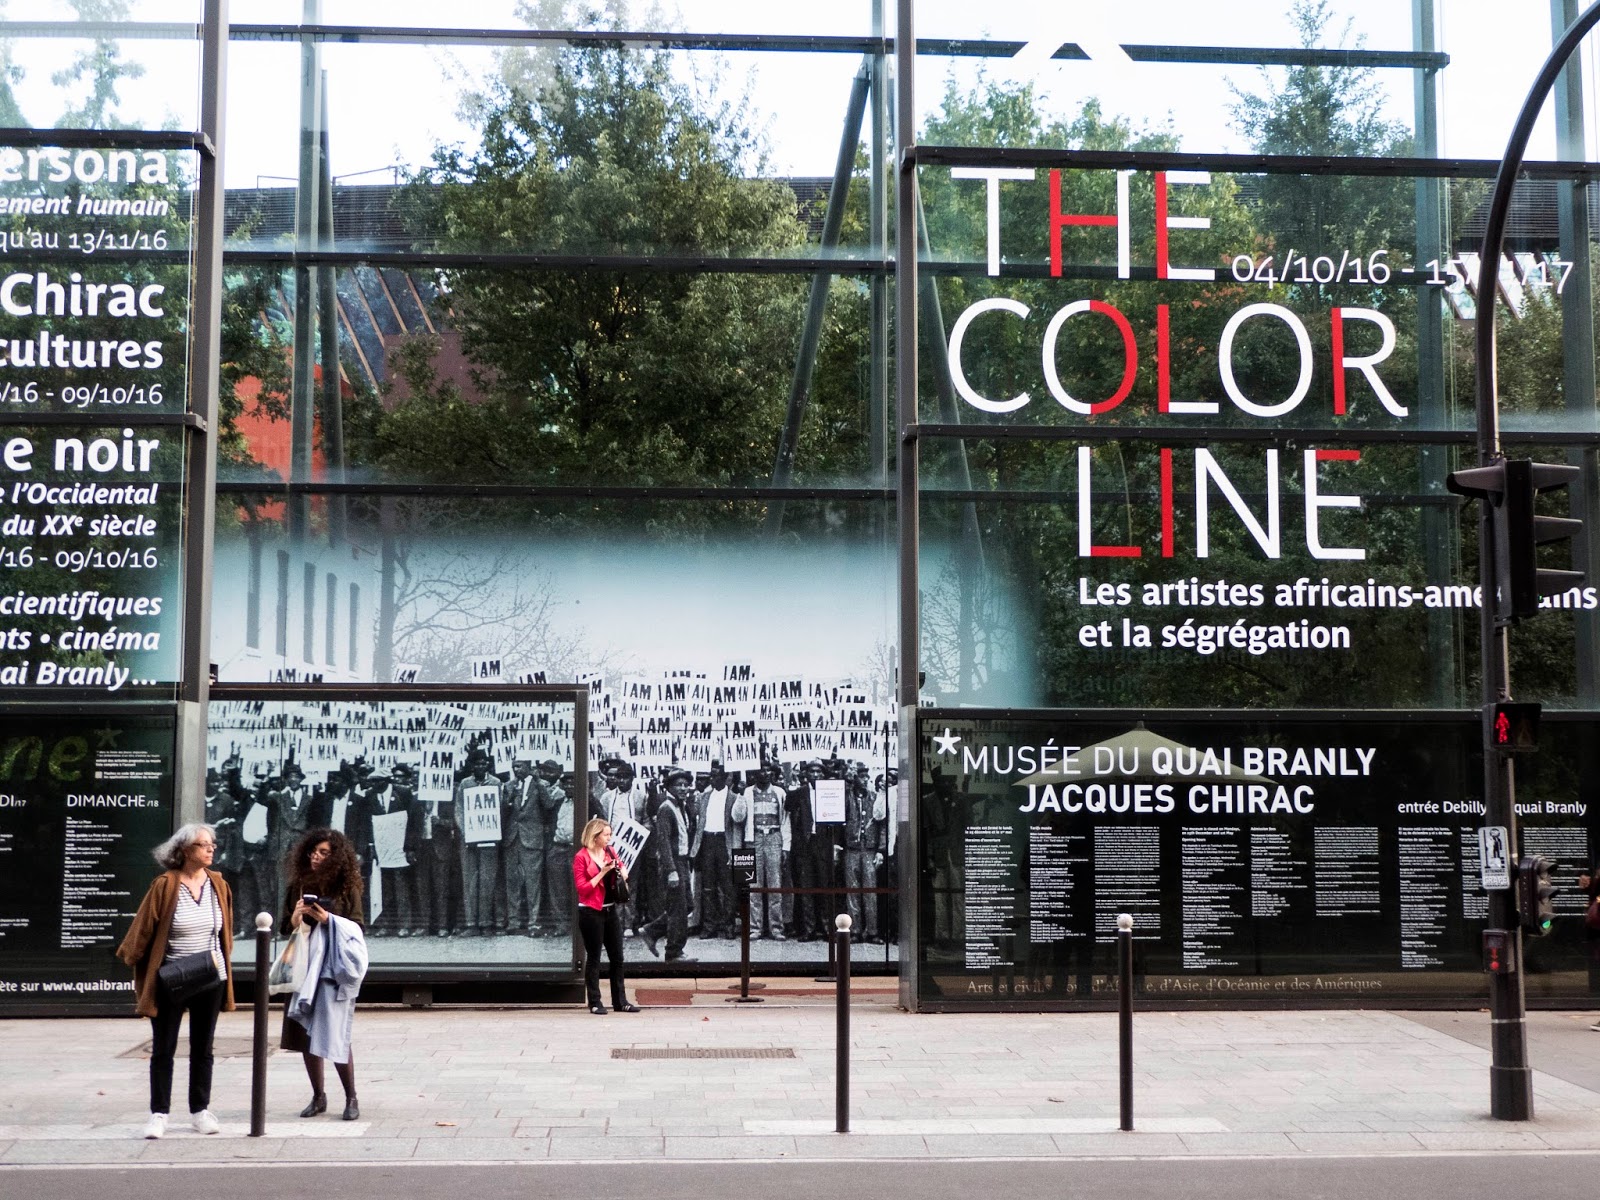 The Color Line entrance to Musée du Quai Branly